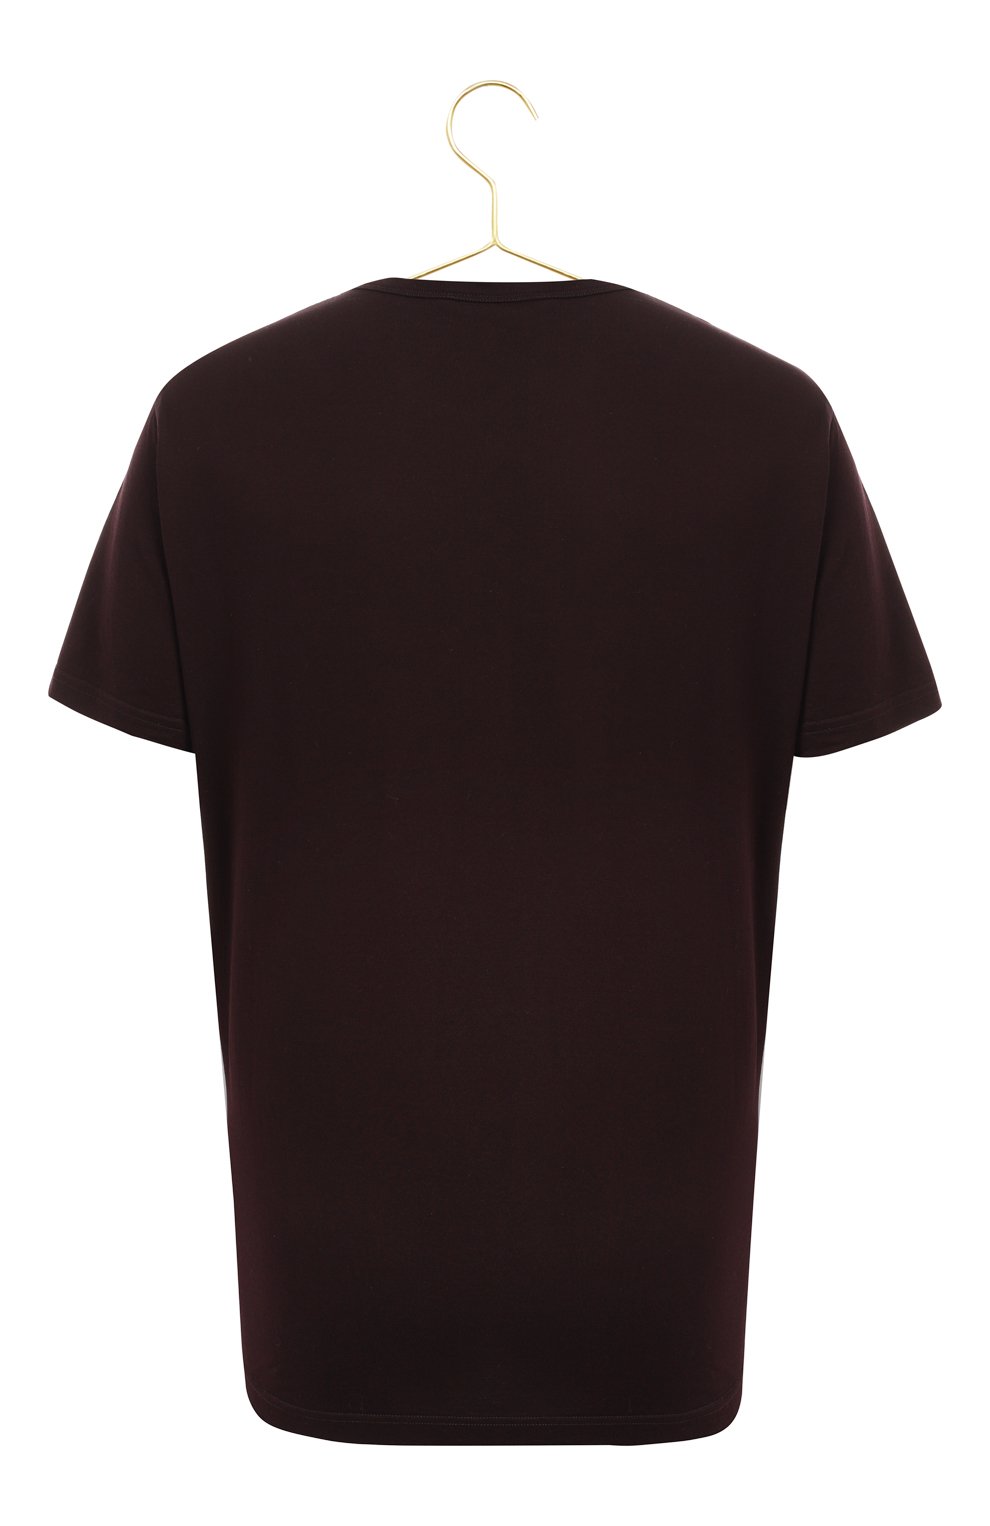 Хлопковая футболка | Dolce & Gabbana | Бордовый - 2